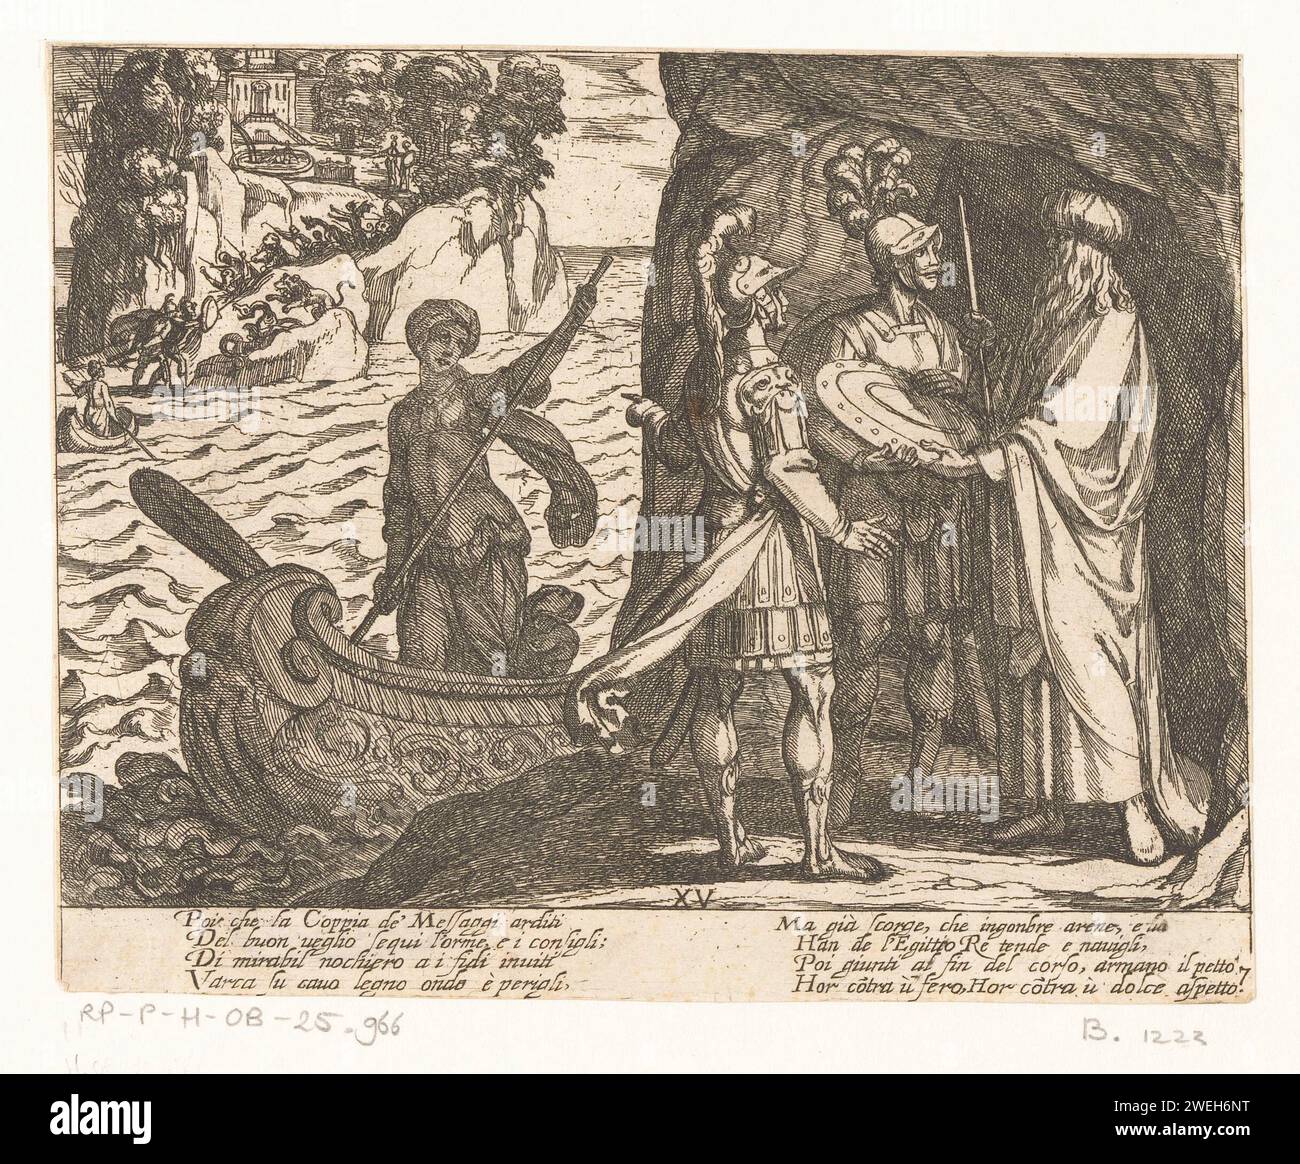 Illustration au Canto XV de 'Gerusalemme Liberata' de Tasso, Antonio Tempesta, 1565 - 1630 imprimer les chevaliers Ubaldo et Carlo représentent une grotte avec le magicien qui leur offre un bouclier, une épée et une carte. Derrière eux une femme dans un bateau à rames. En arrière-plan, les chevaliers arrivent sur l’île d’Armida, où ils se battent avec des animaux sauvages. Versets italiens de Tasso en deux colonnes dans Submarge. Gravure sur papier (scènes de) œuvres littéraires spécifiques : Tasso, Gerusalemme Liberata. knight. prosélytisme militant : guerre religieuse, croisade, etc. sorcier, magicien, magicien, warlock Banque D'Images